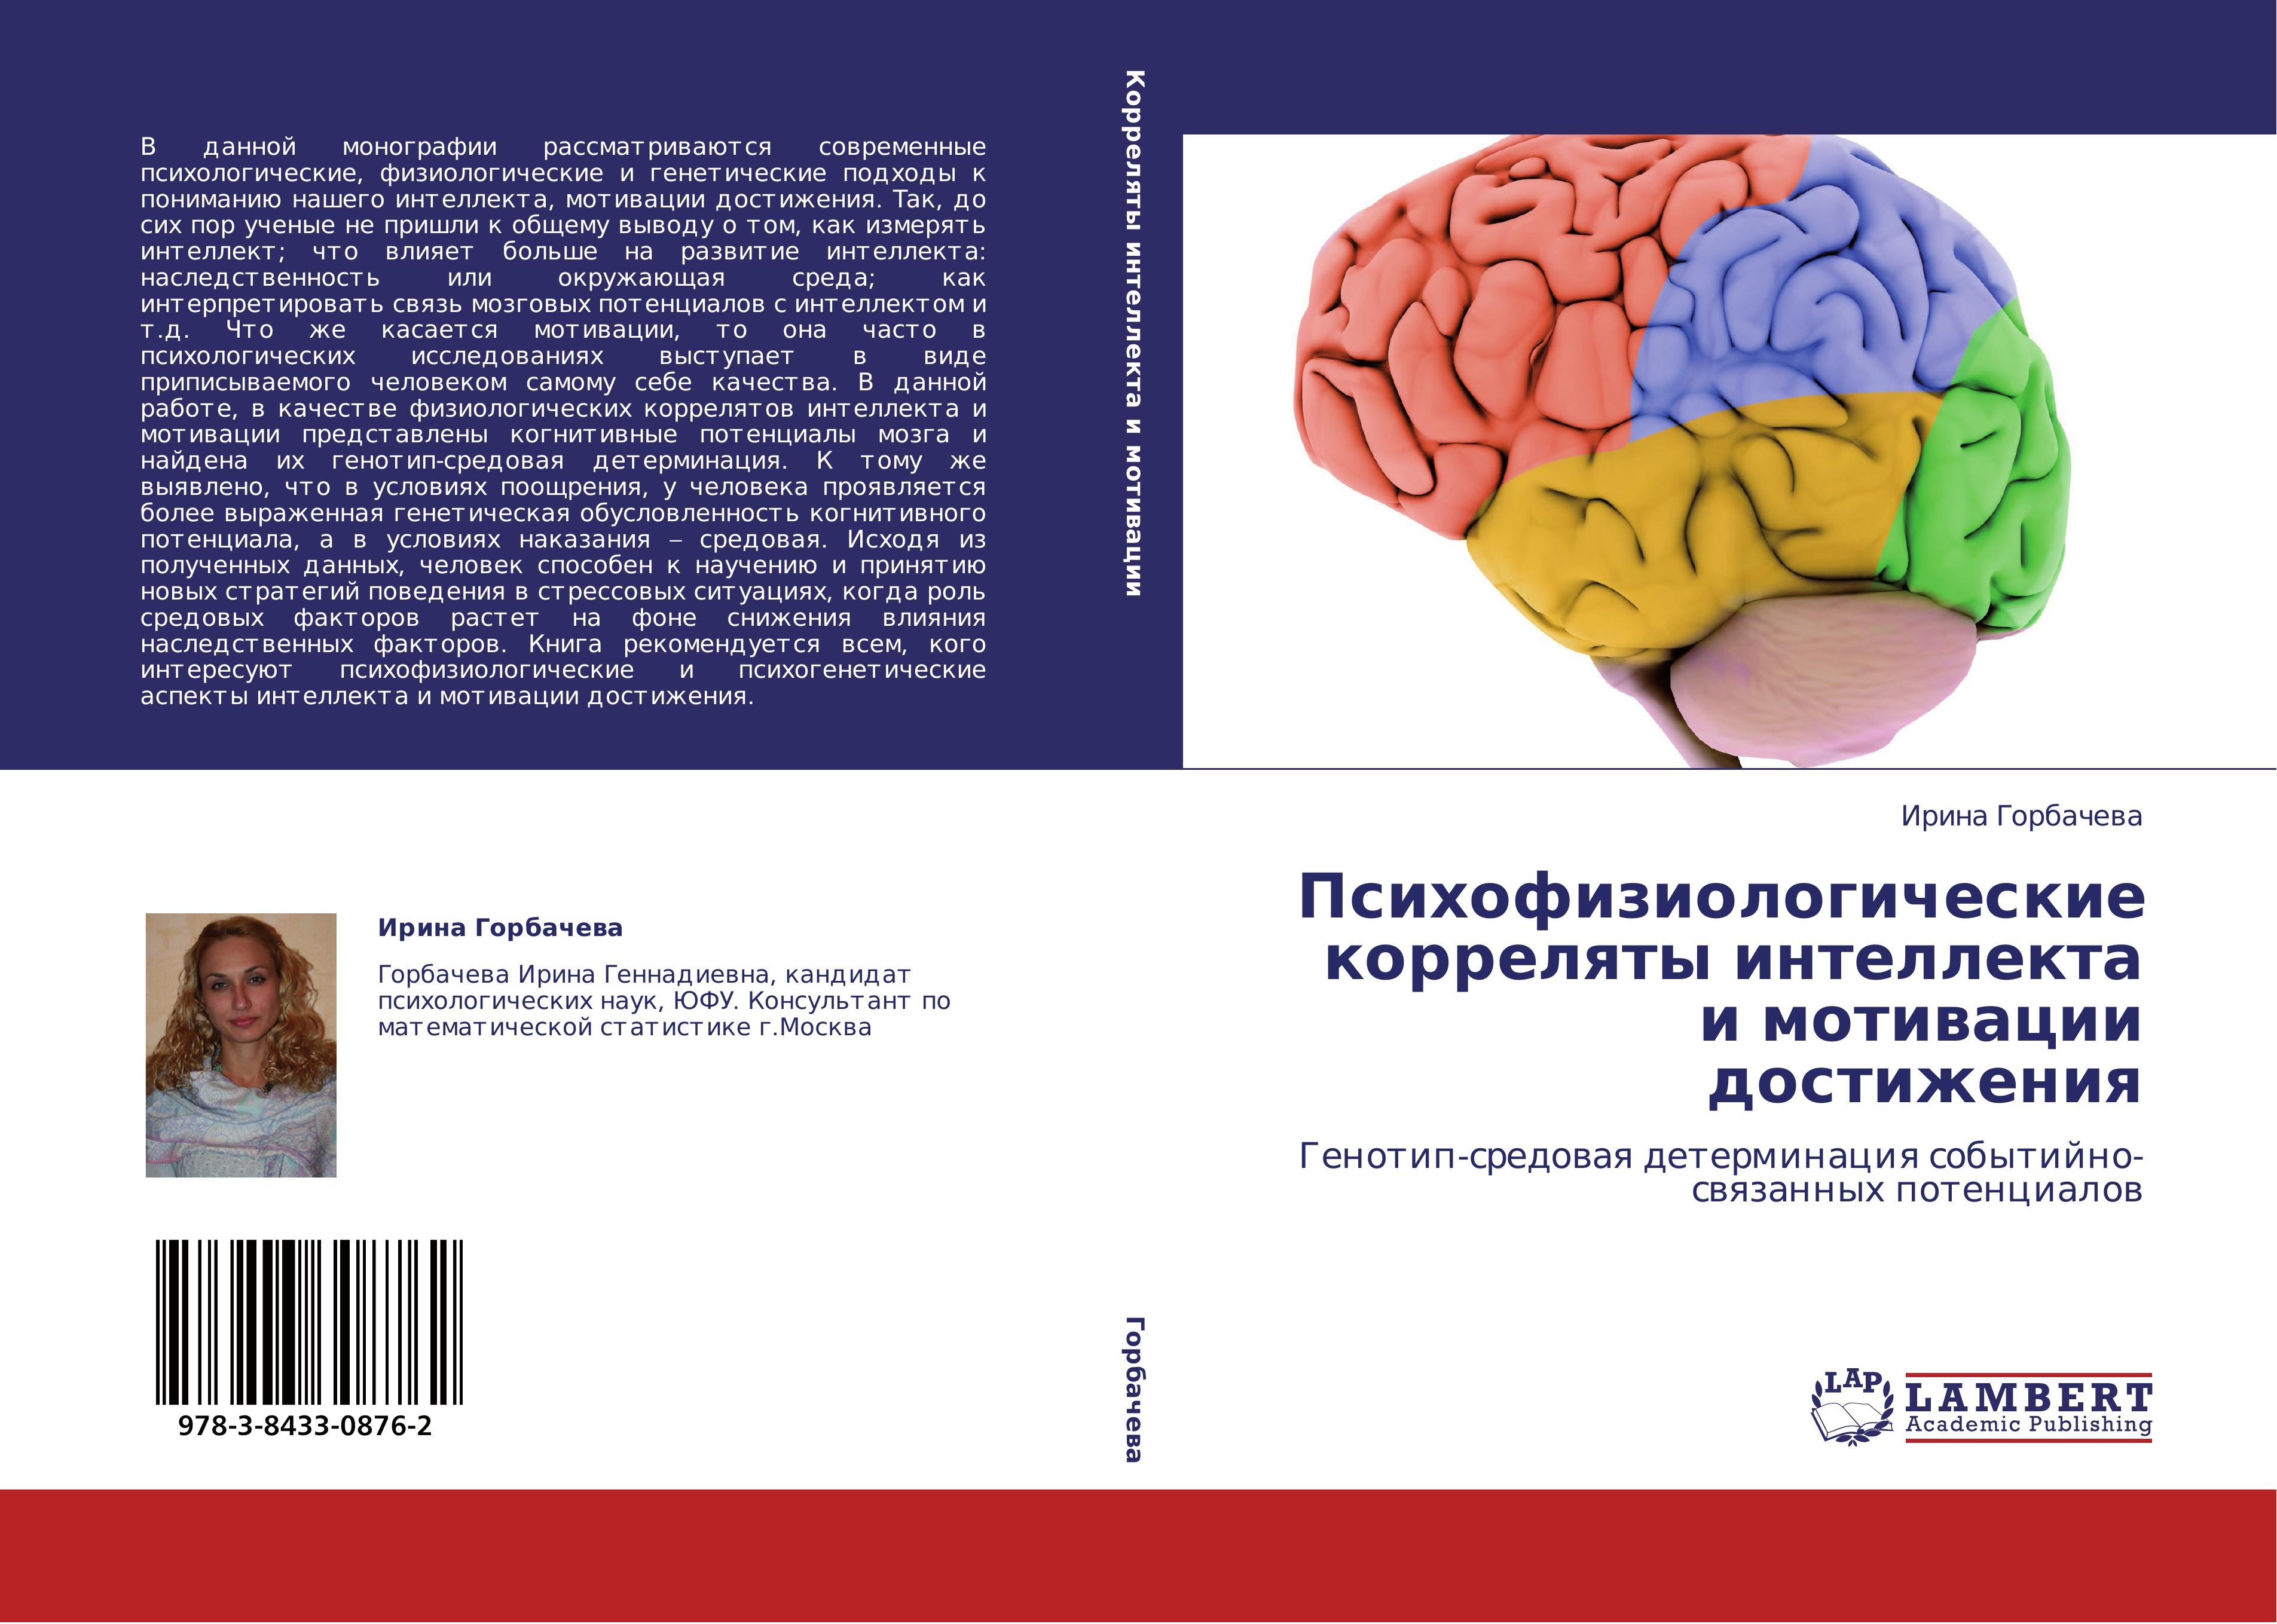 Psikhofiziologicheskie korrelyaty intellekta i motivatsii dostizheniya - Gorbacheva, Irina